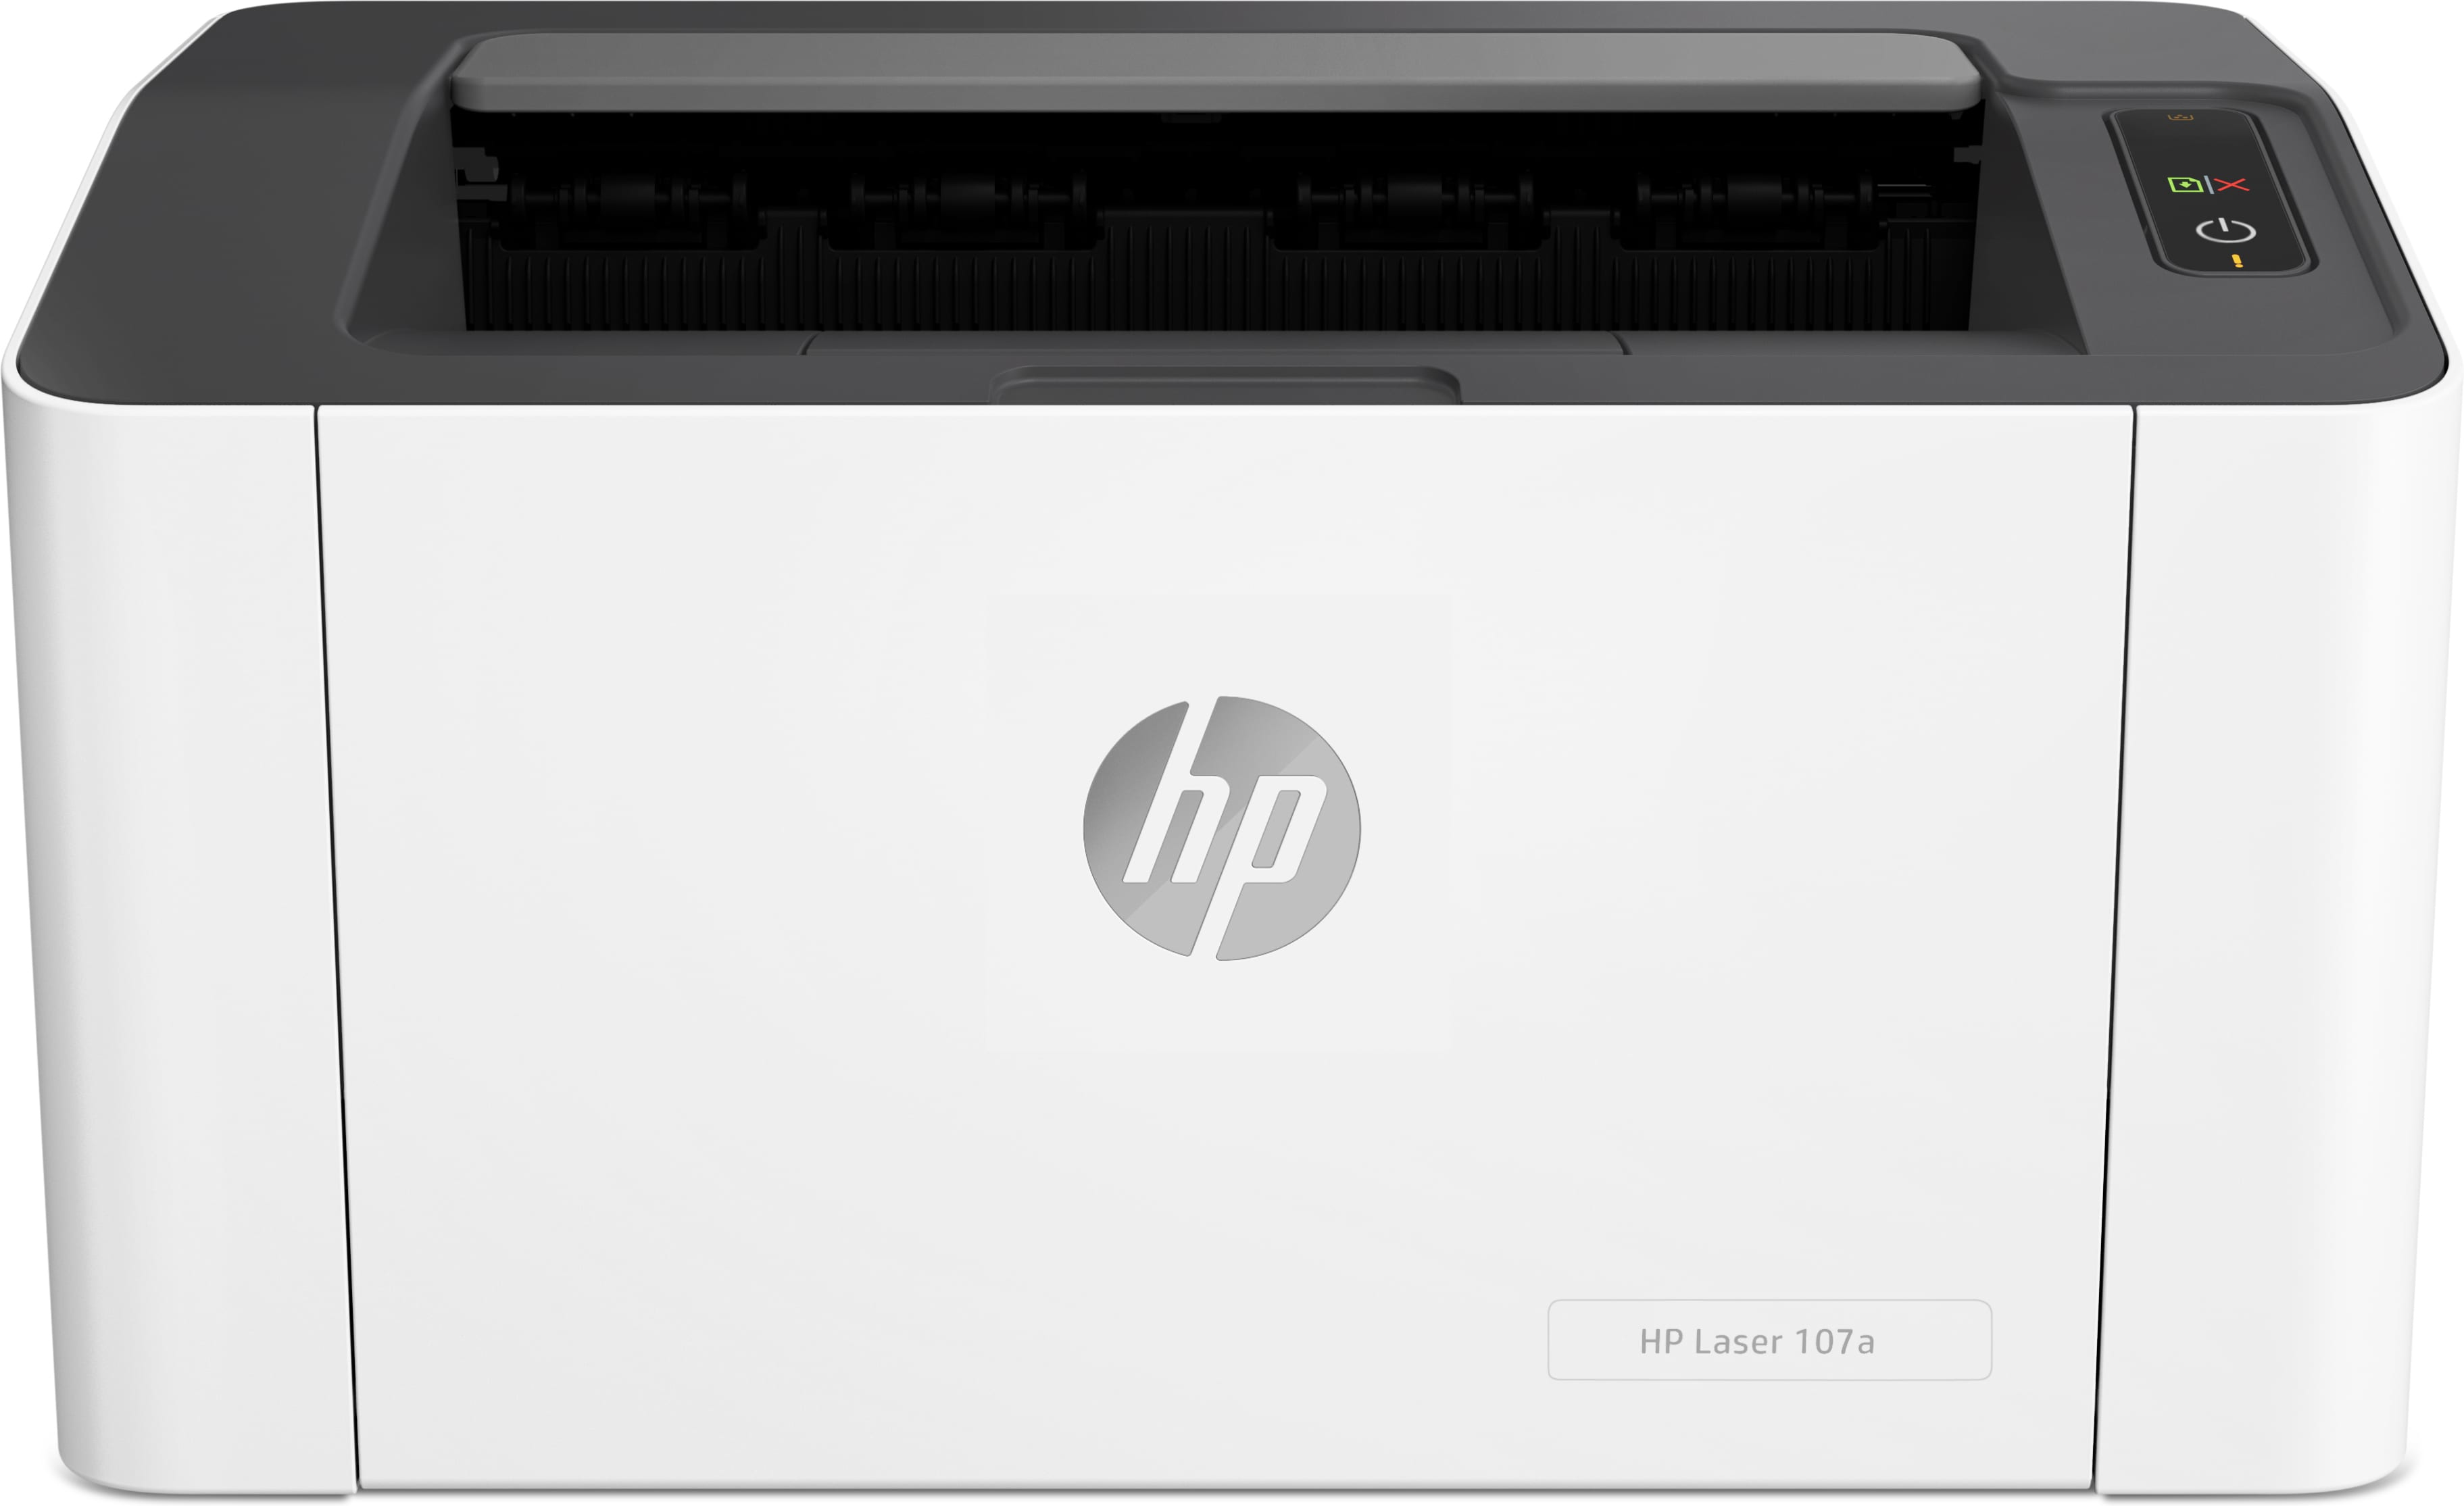 HP Laser Stampante 107a, Bianco e nero, Stampante per Piccole e medie  imprese, Stampa